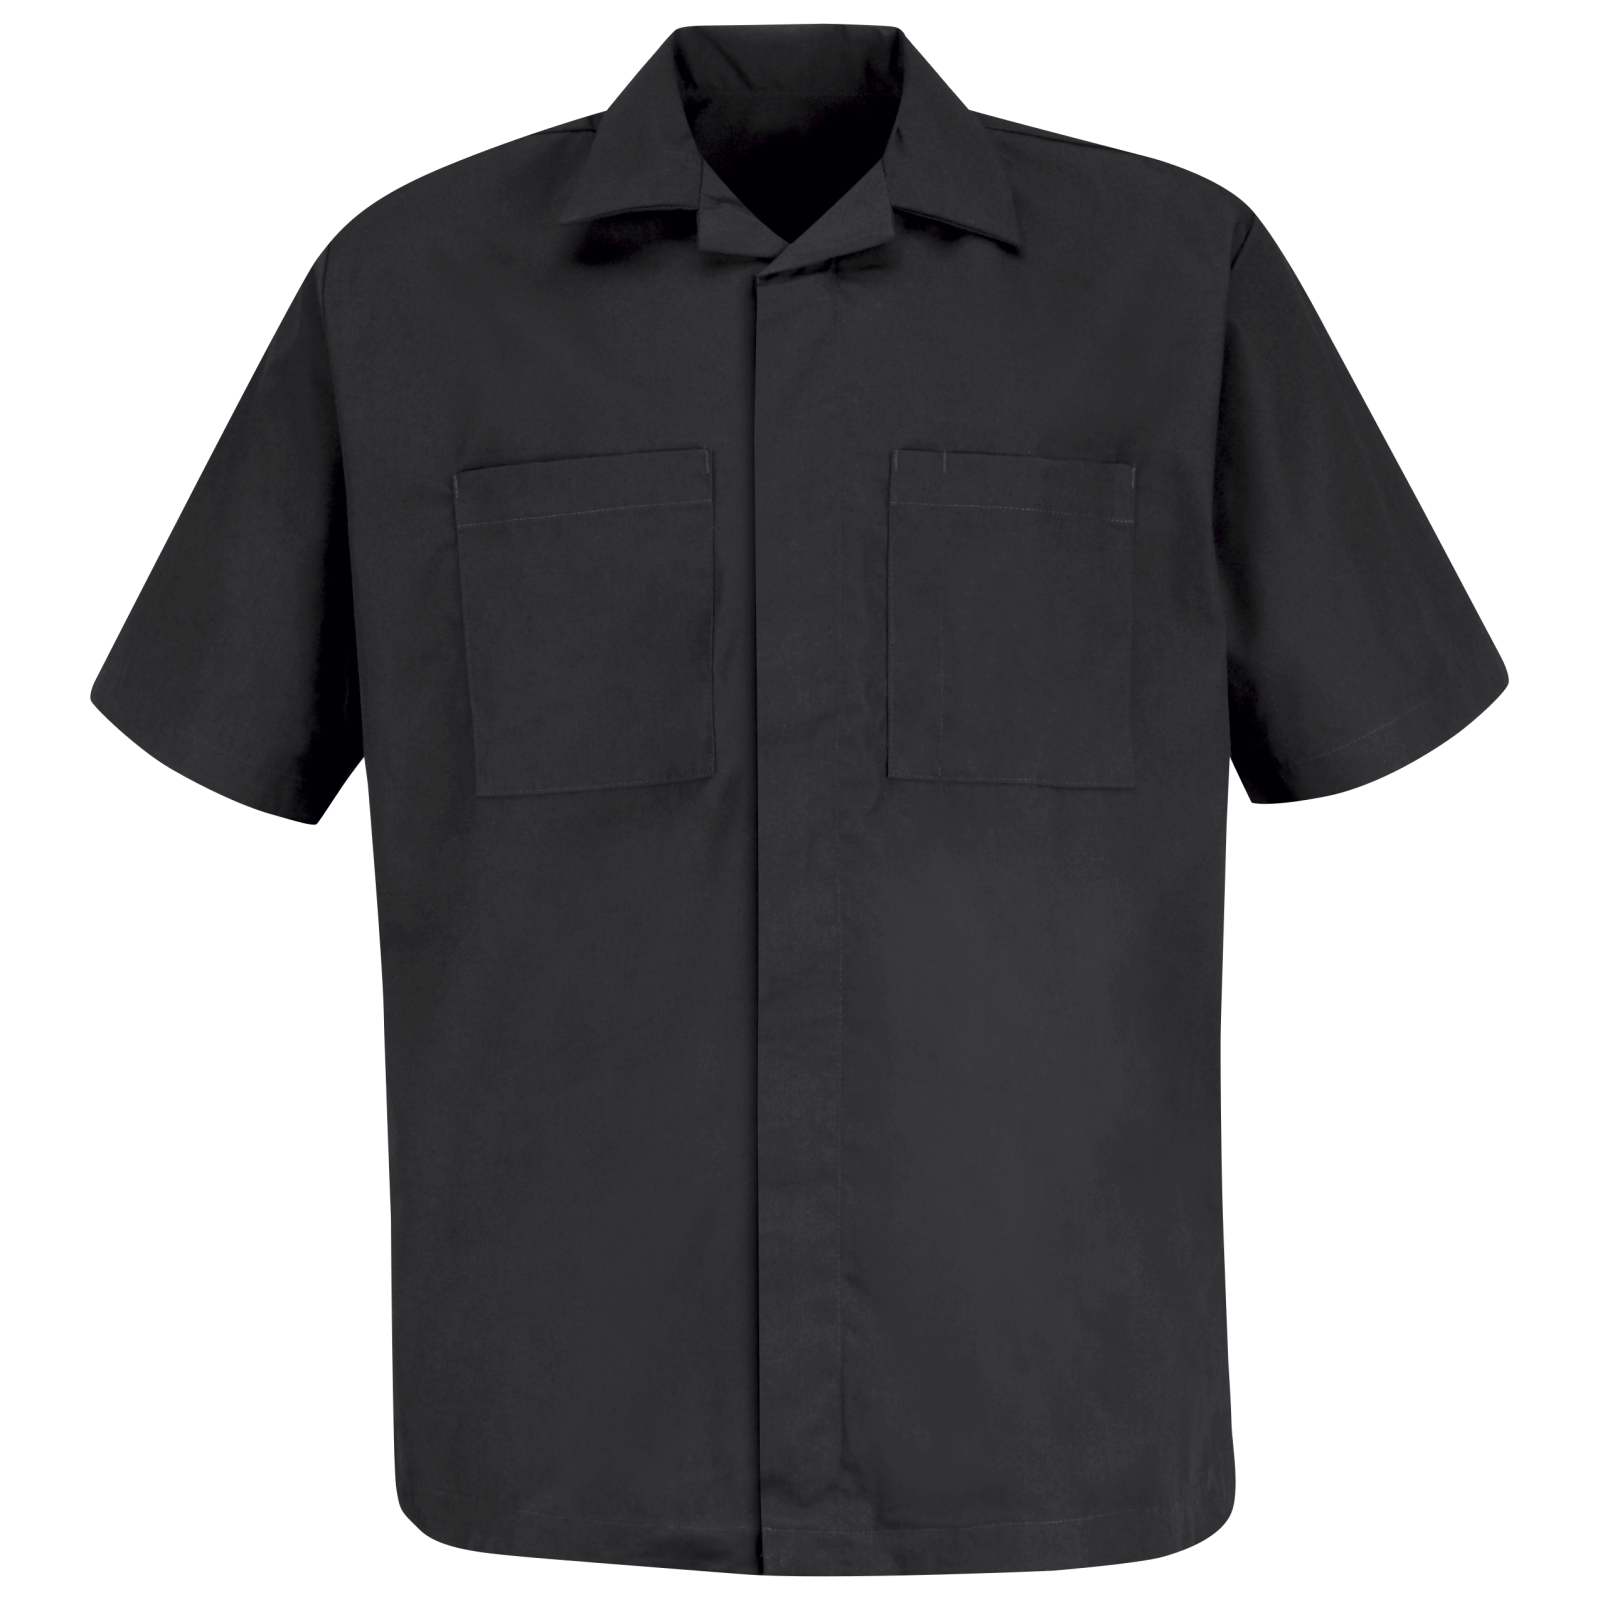 Men's Convertible Collar Shirt Jacket | Red Kap®